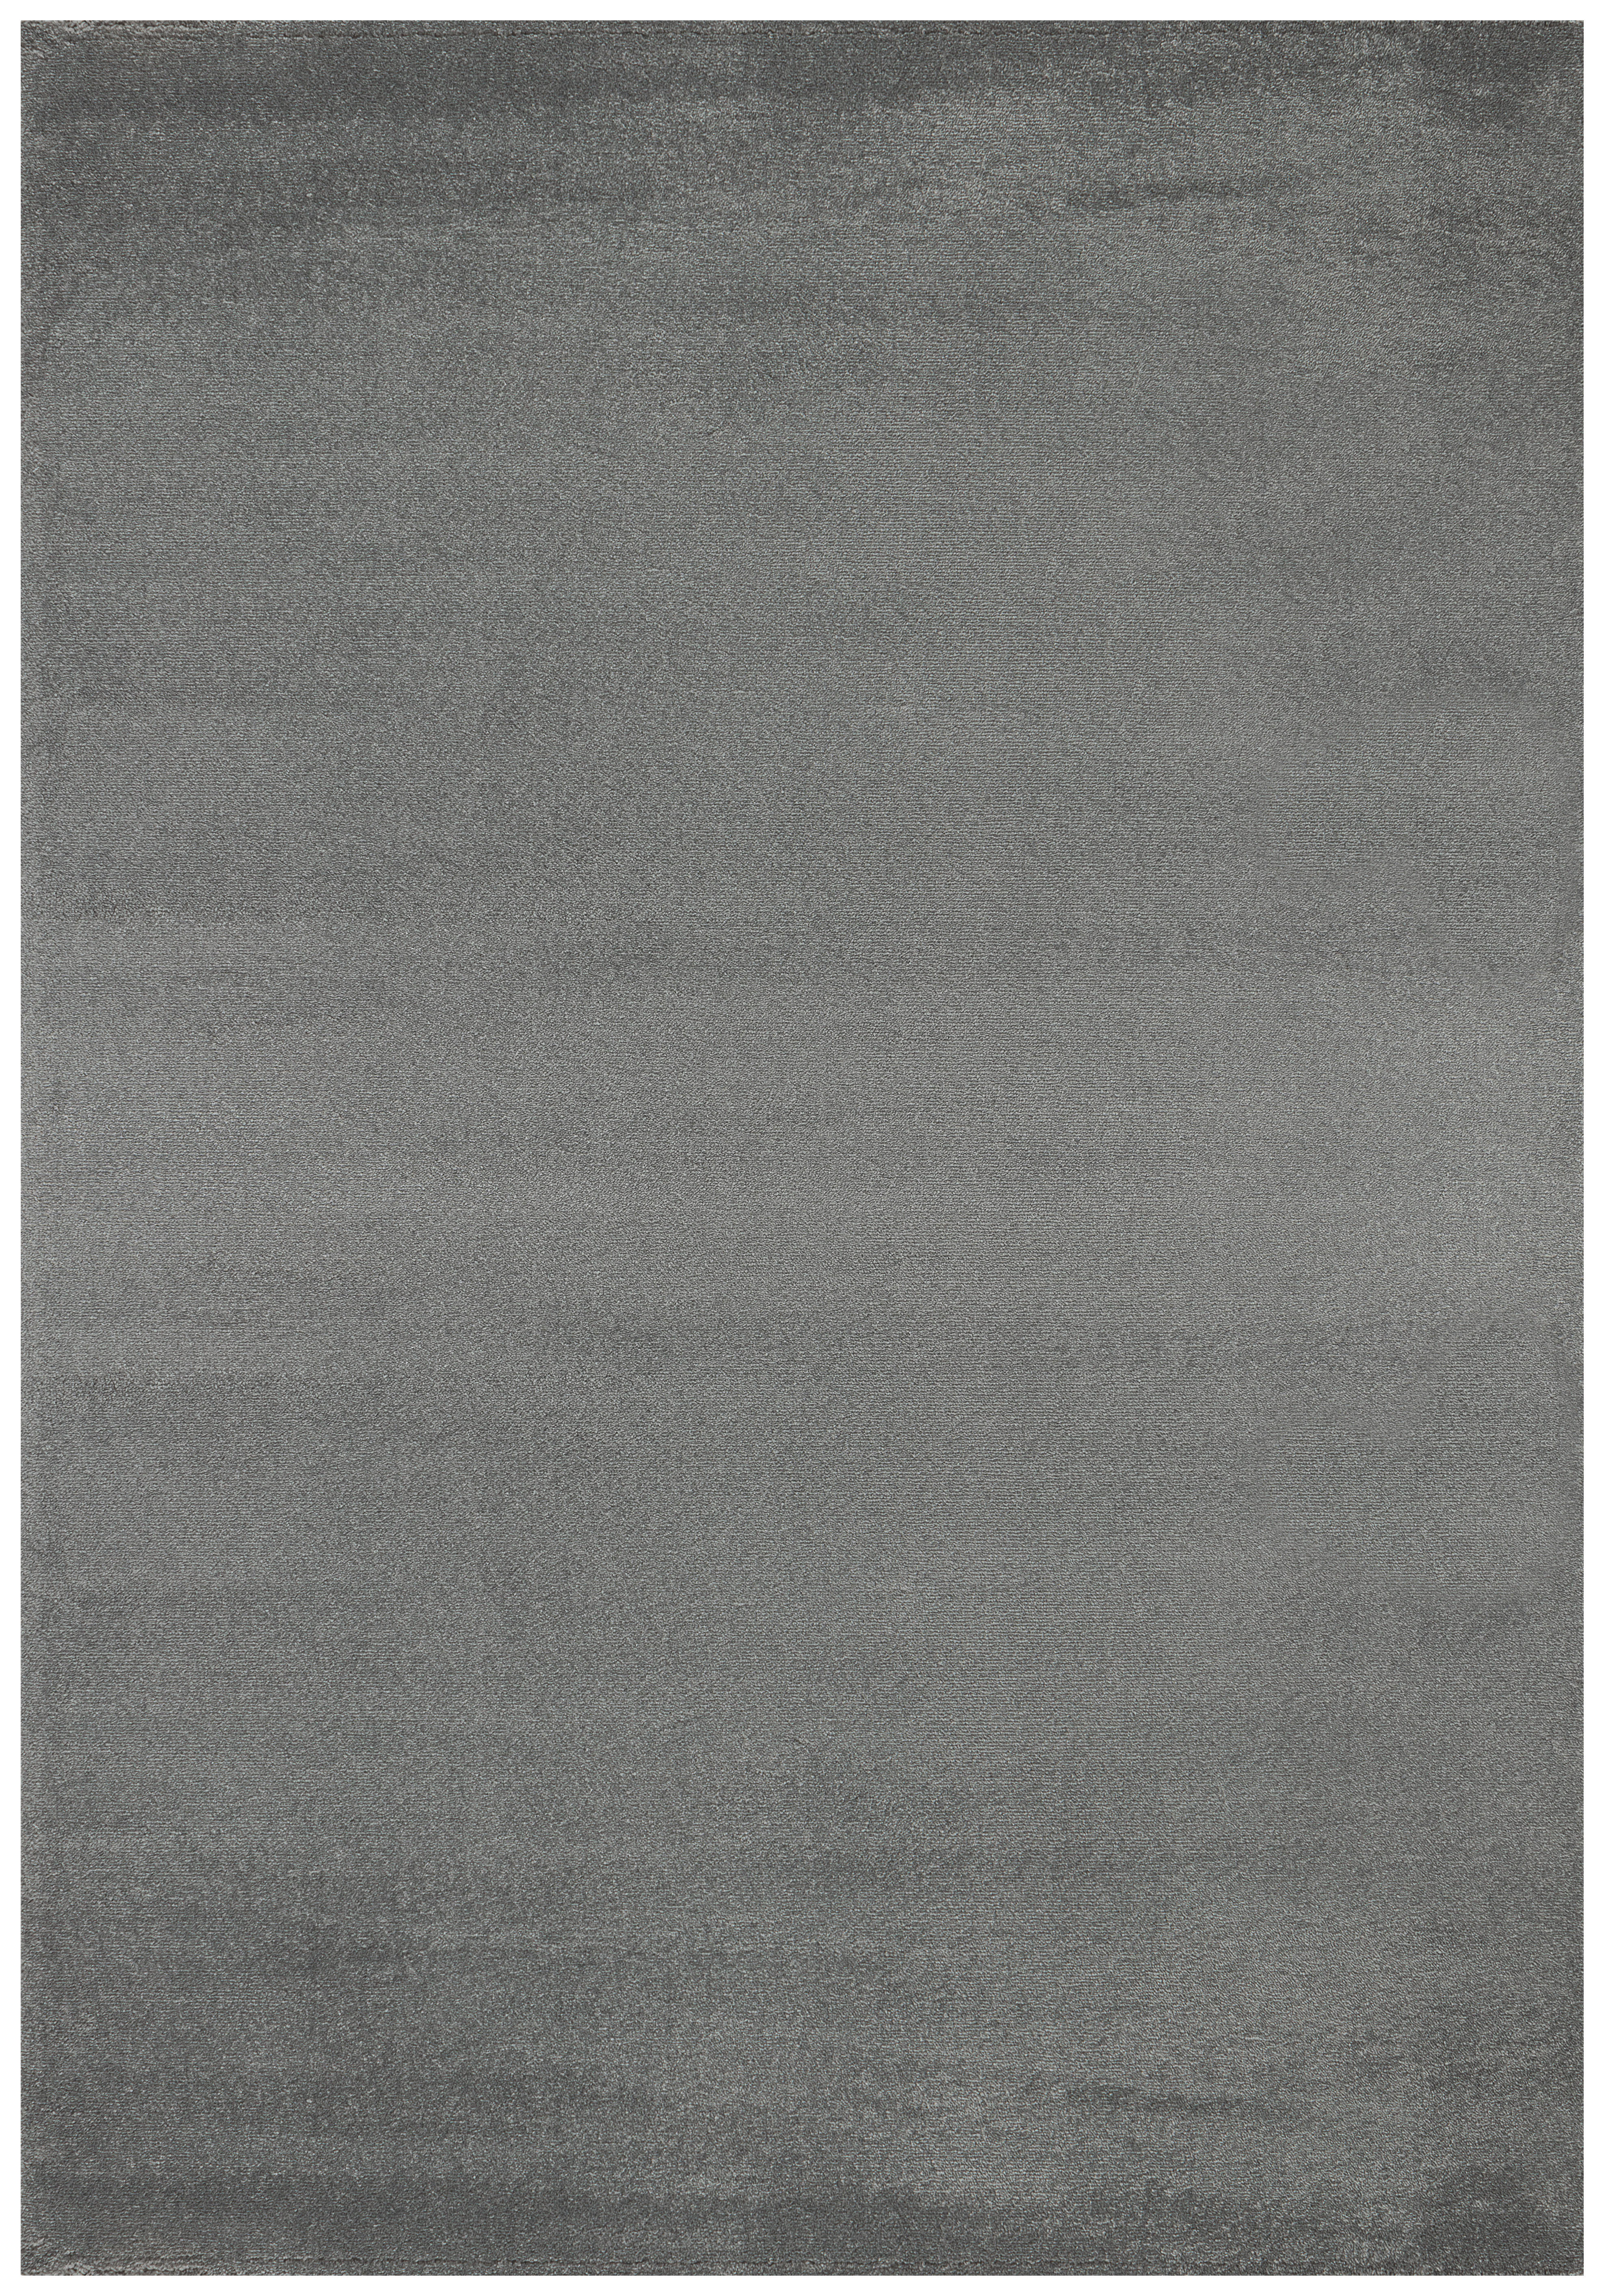 Levně TKANÝ KOBEREC, 60/100 cm, barvy stříbra